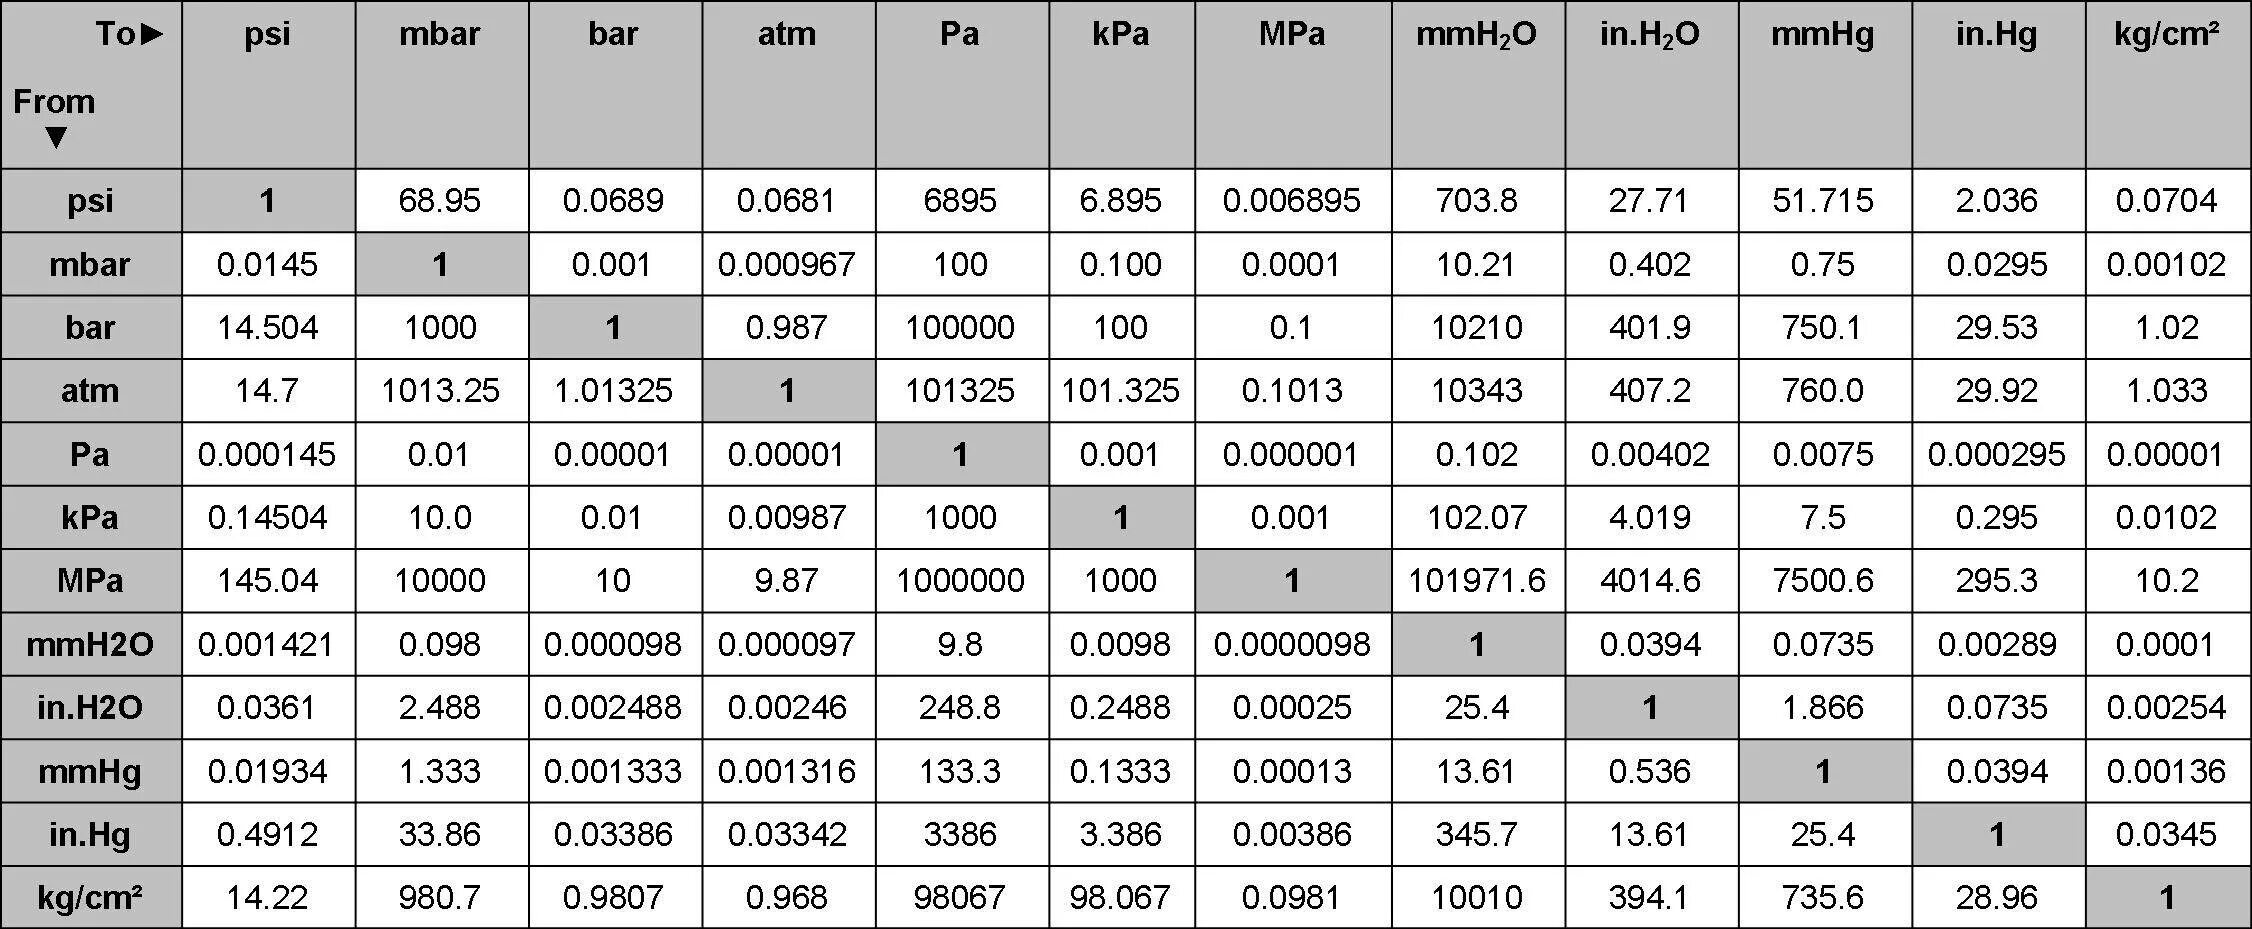 18 000 3 000 15. Единицы измерения давления psi. Таблица давления МПА В бар и атм. 1 MPA В кгс/см2. Единицы давления перевод таблица.